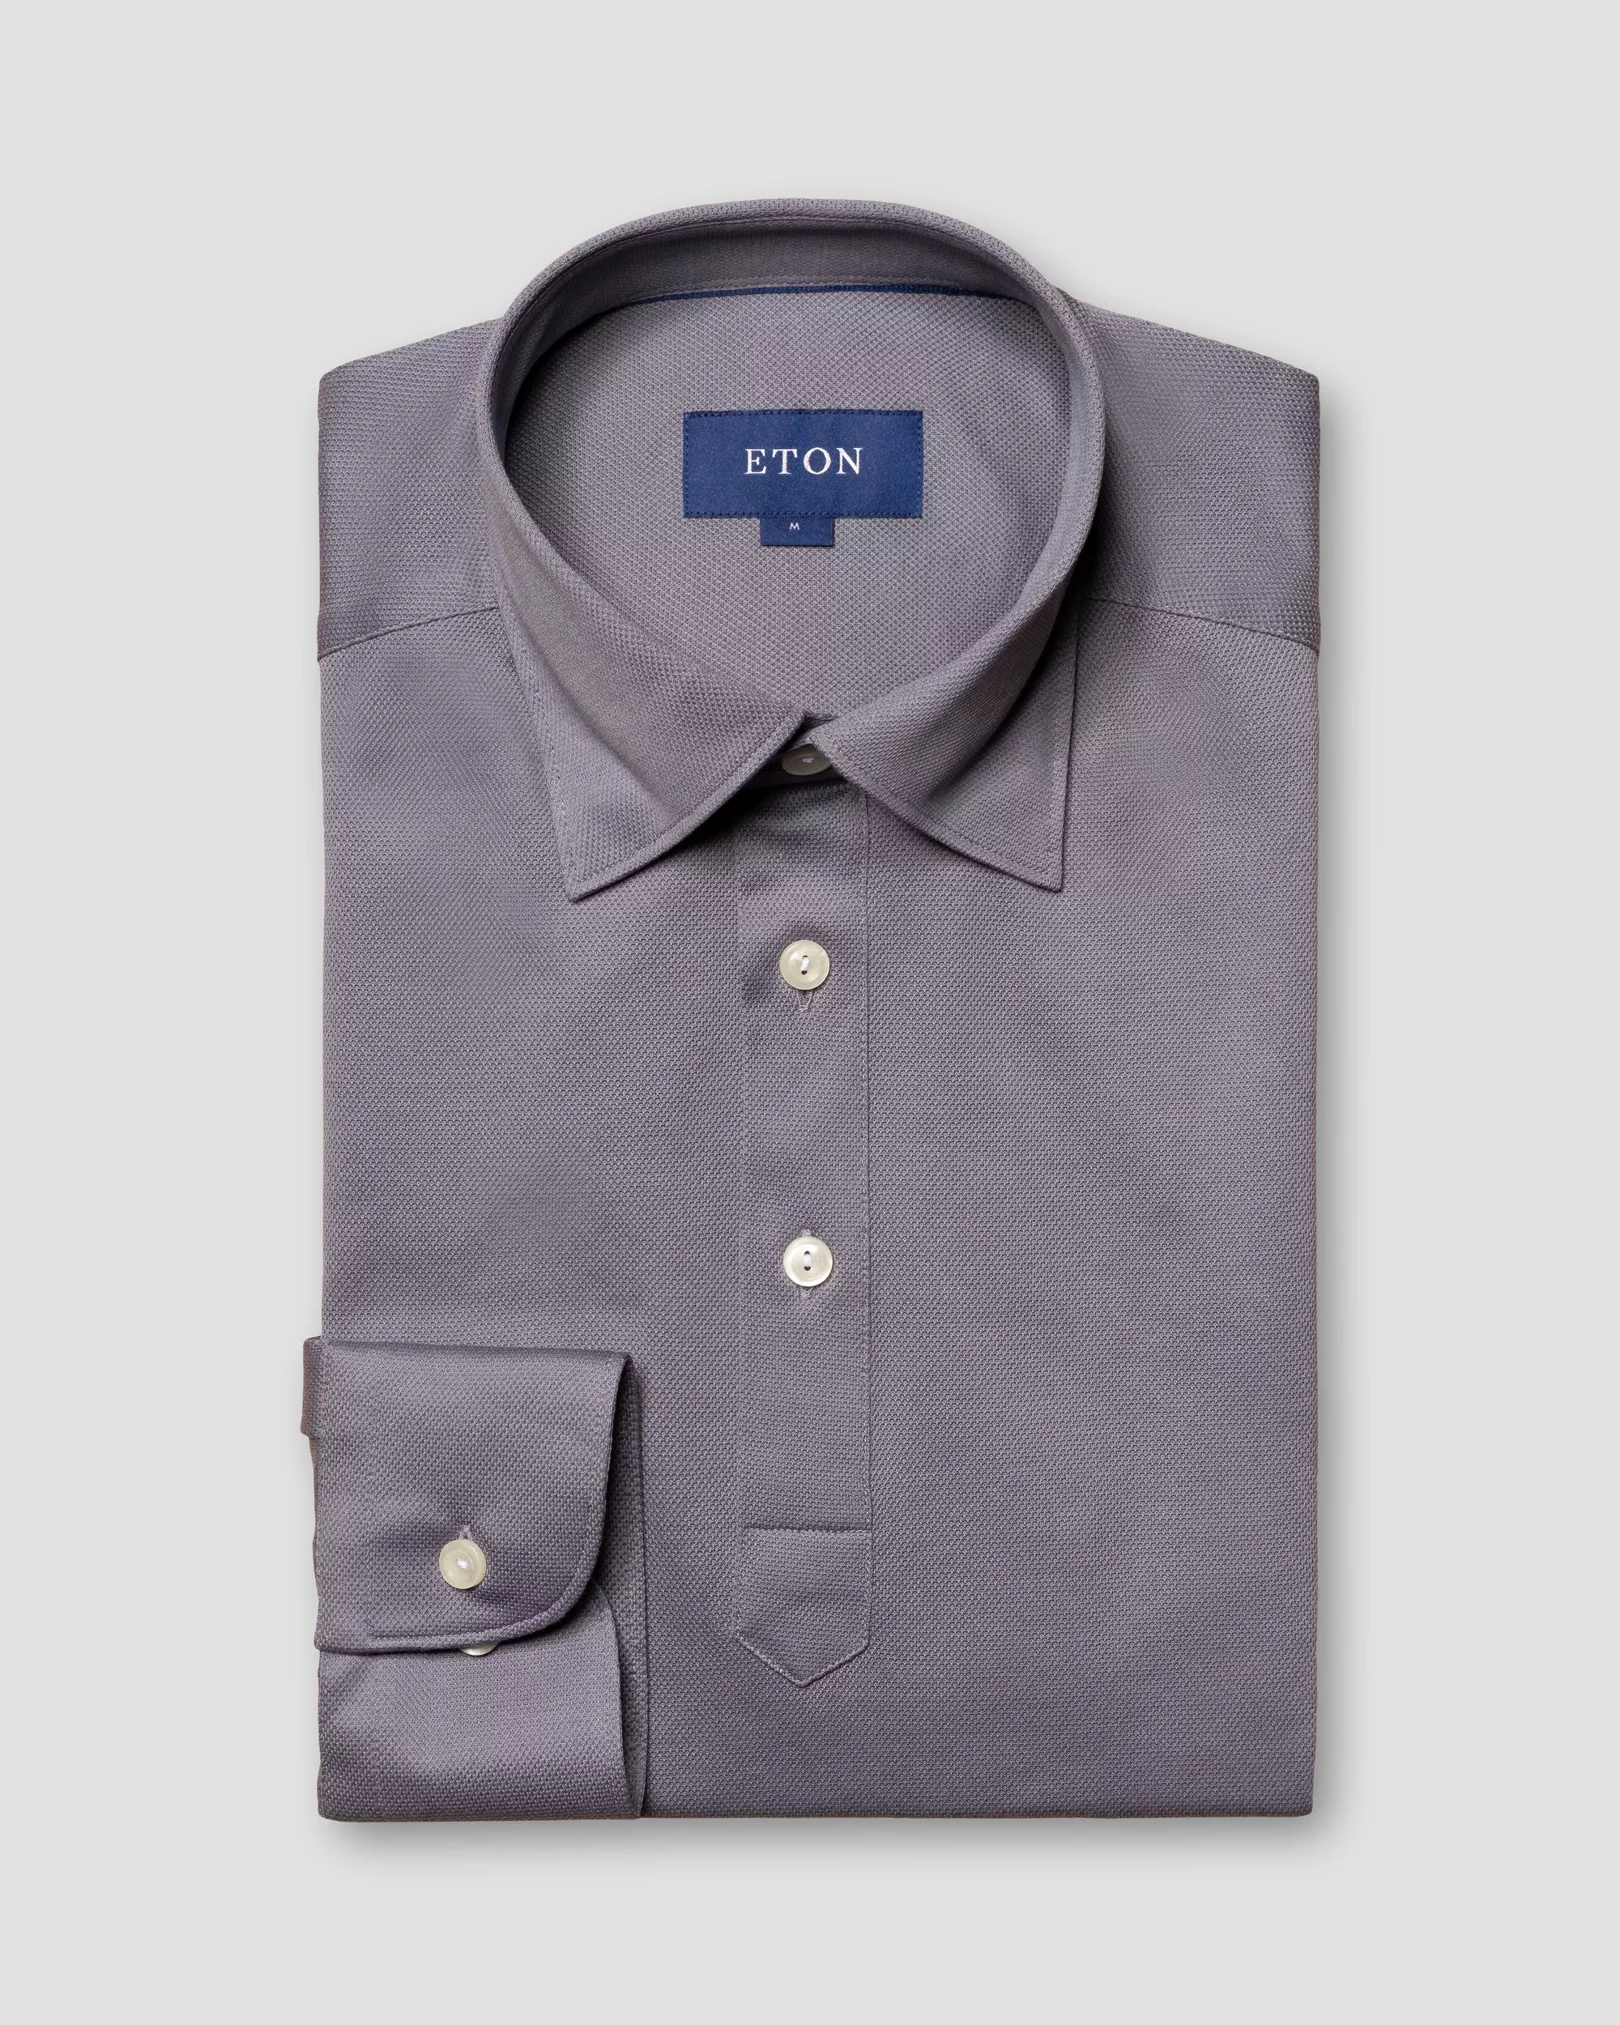 Eton - gray polo shirt long sleeved